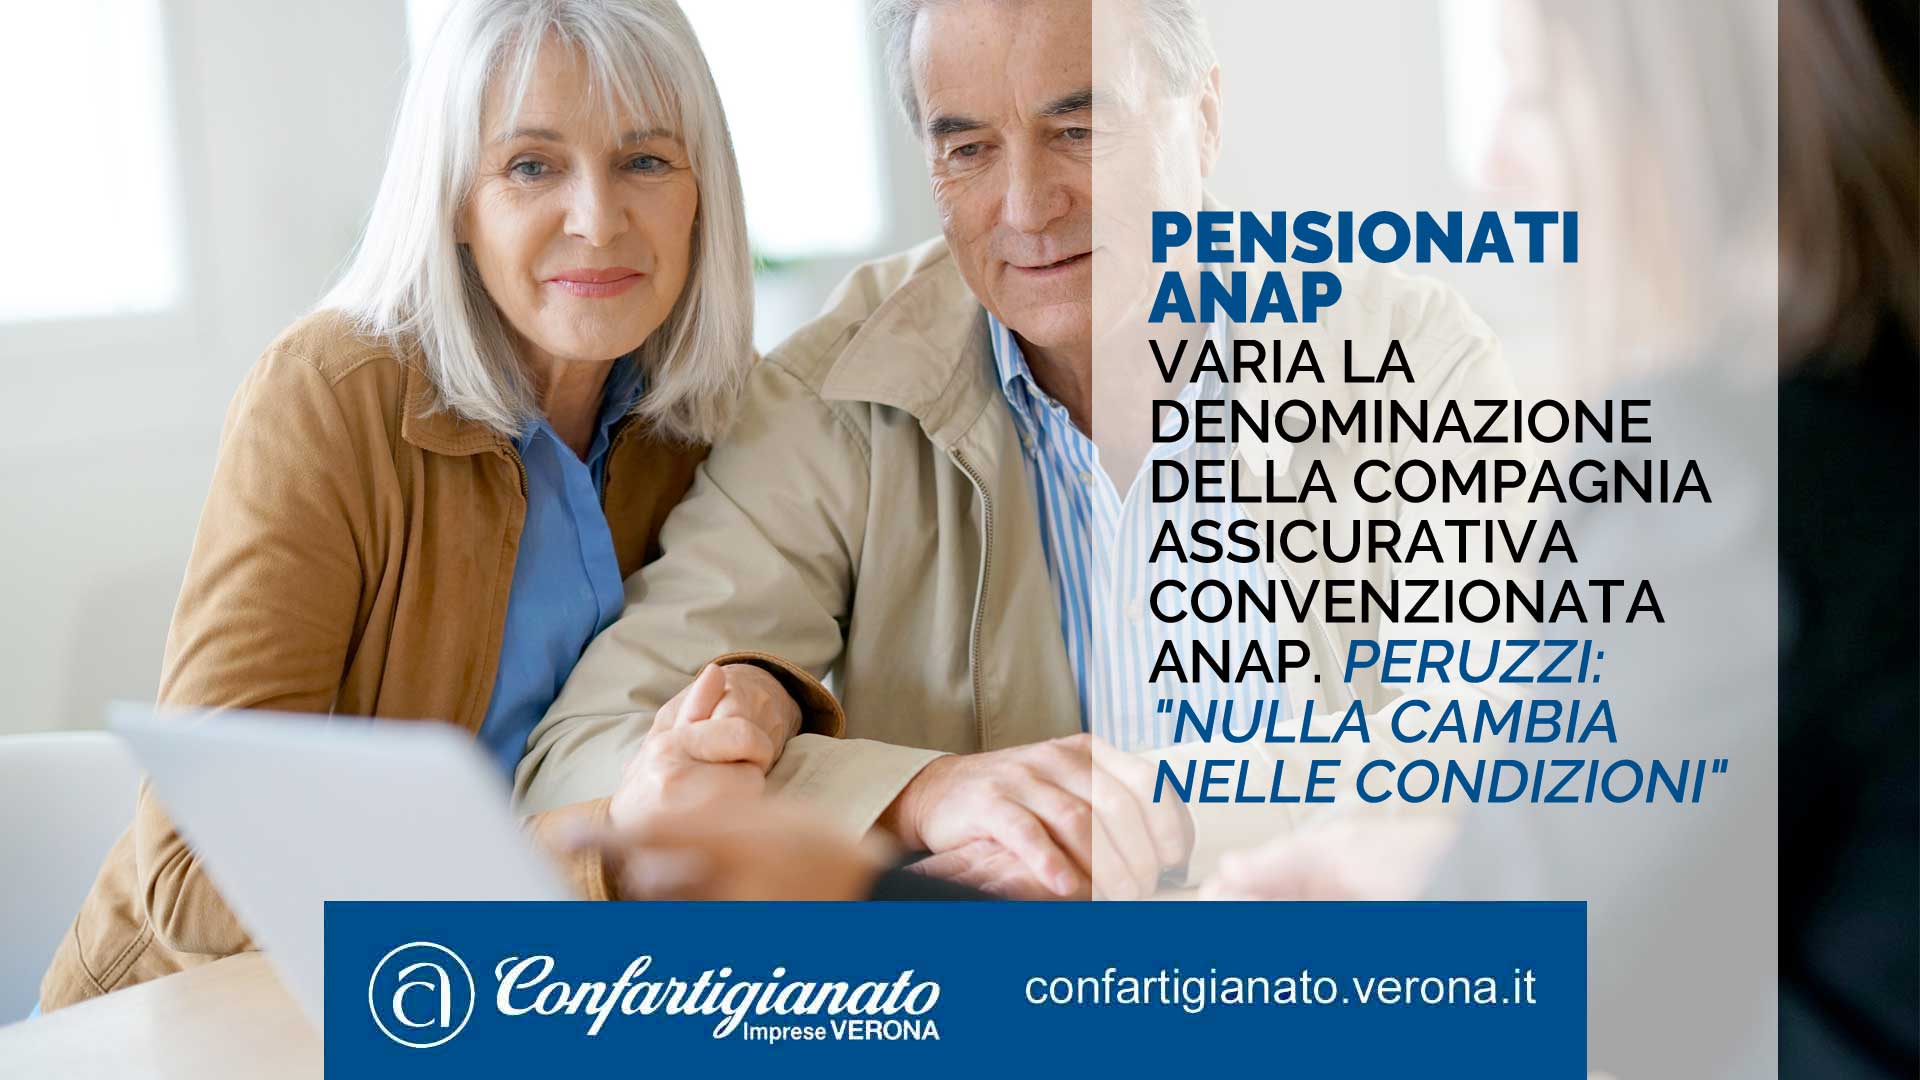 PENSIONATI ANAP – Varia la denominazione della compagnia assicurativa convenzionata ANAP. Peruzzi: "Nulla cambia nelle condizioni"